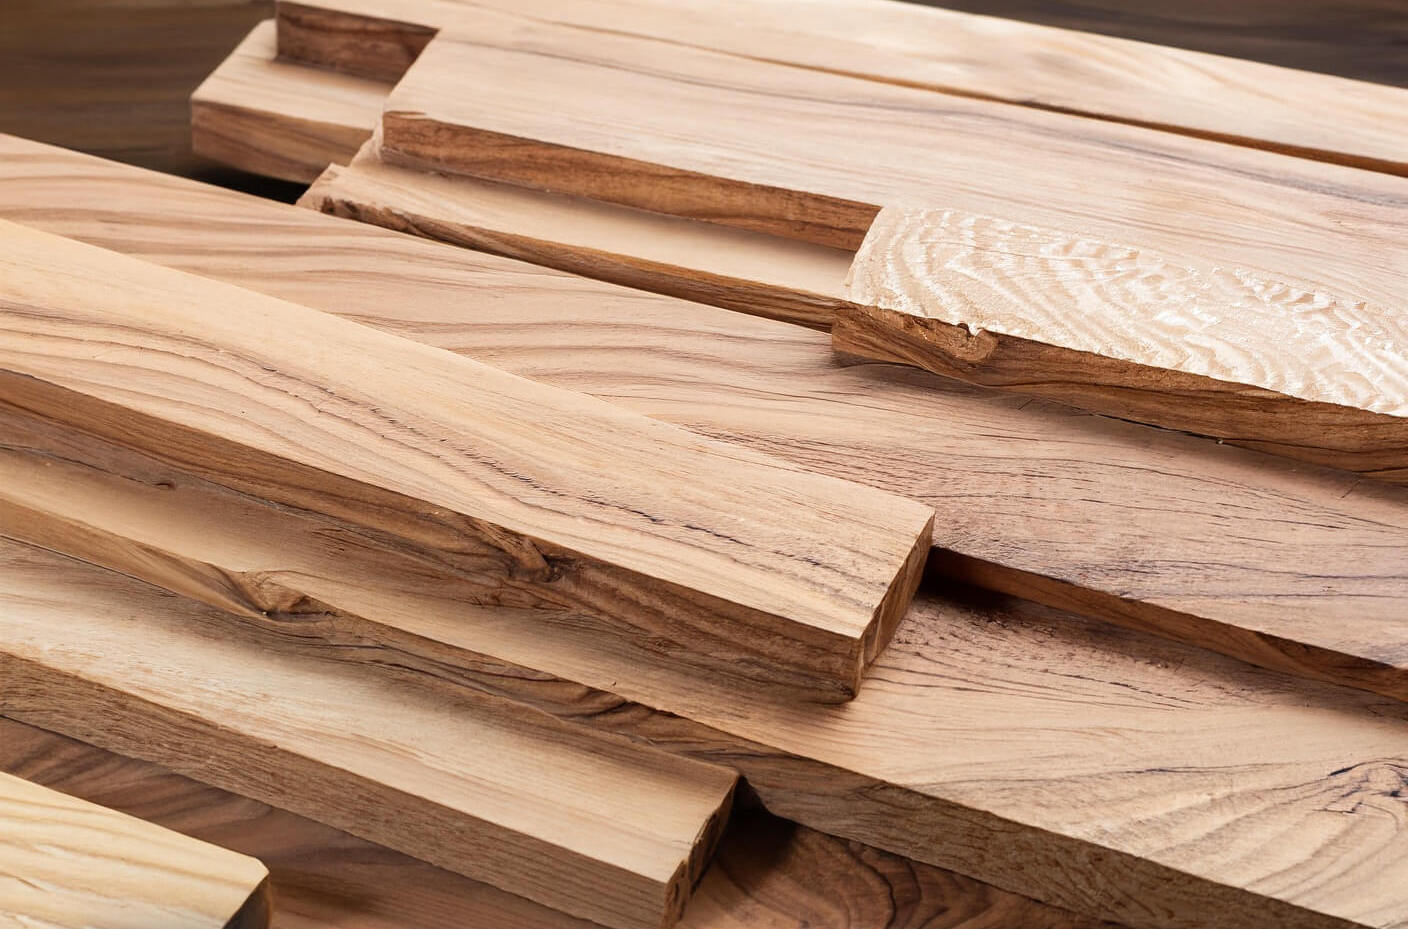 Walnut woods planks for furniture making DIY